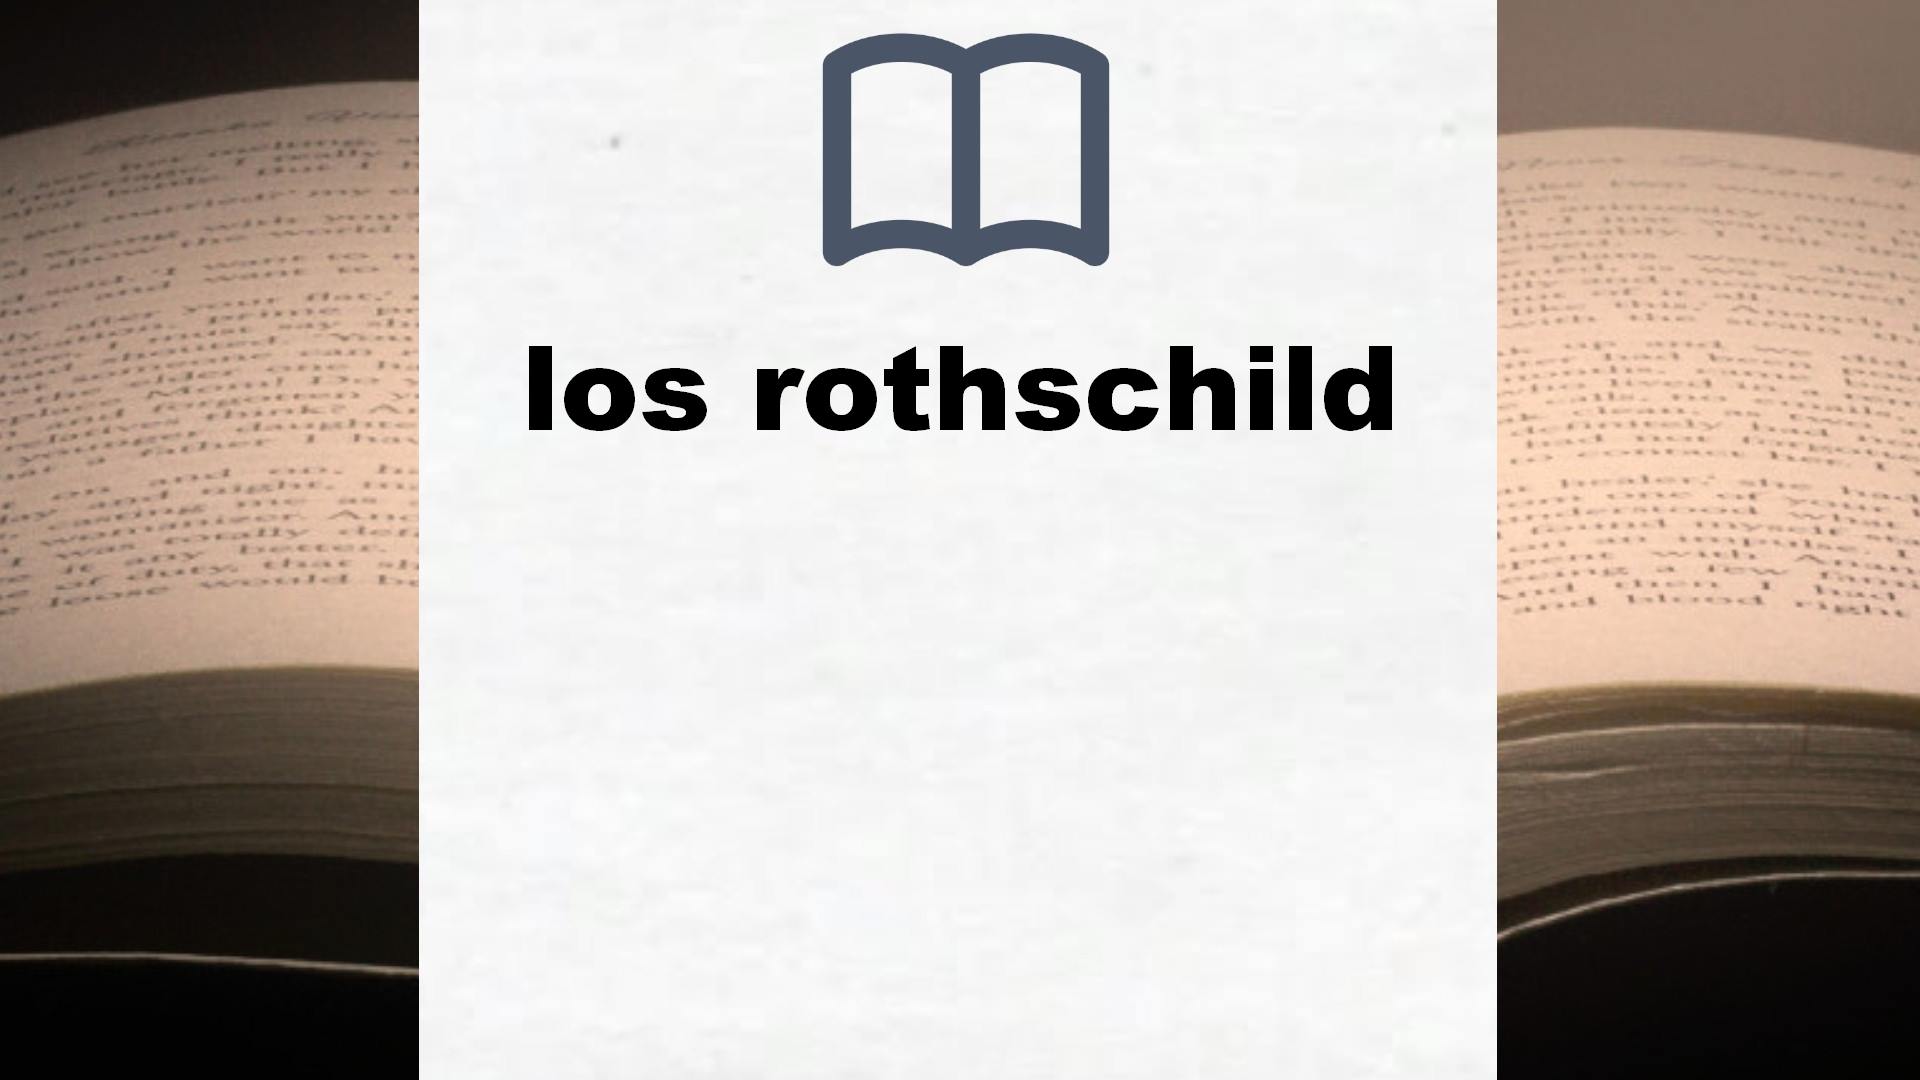 Libros sobre los rothschild